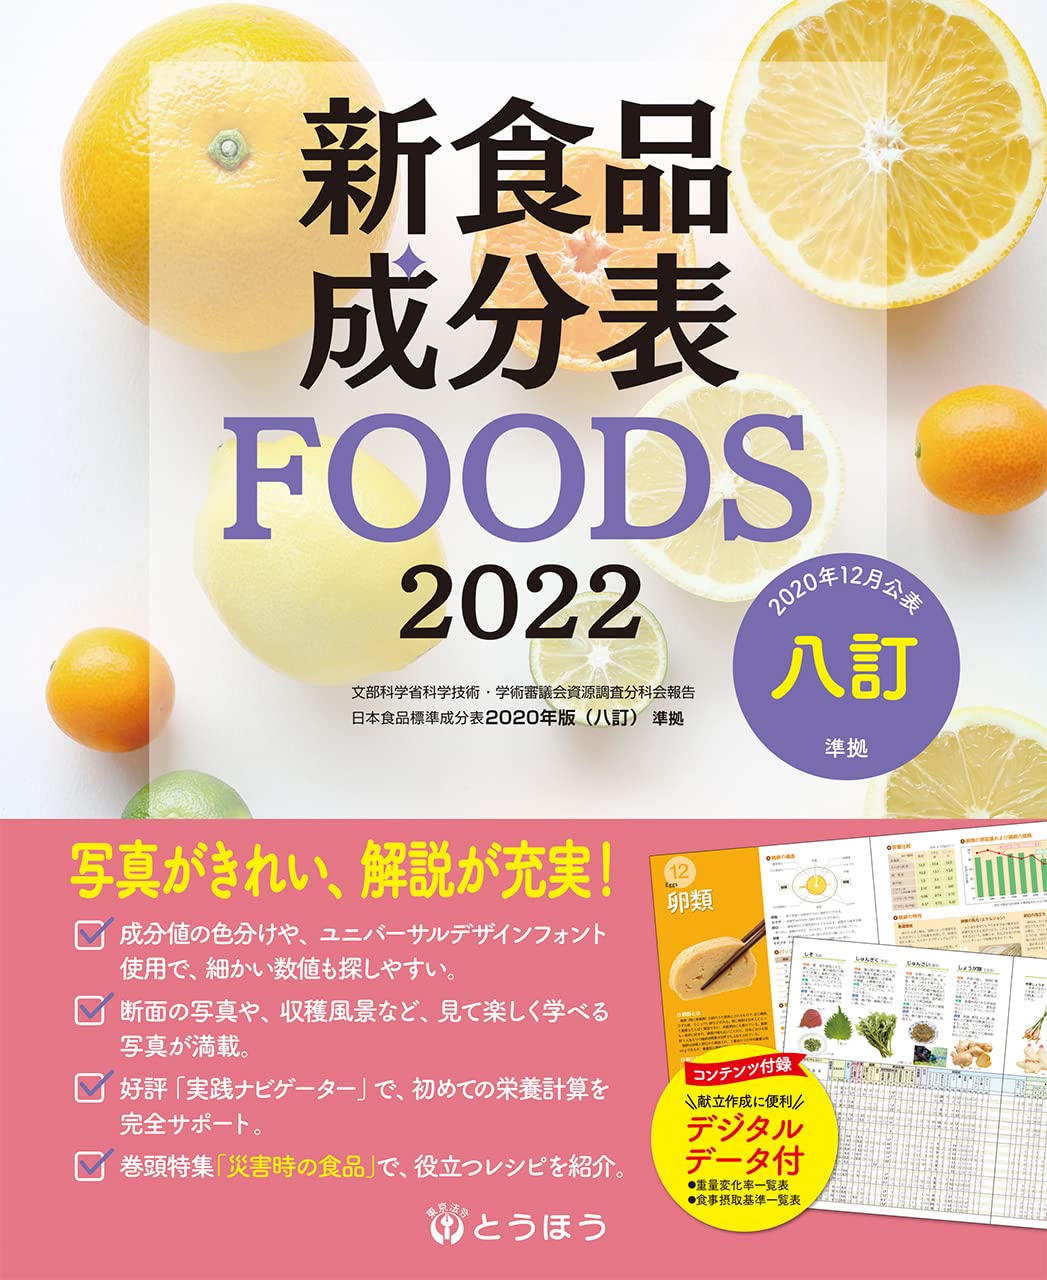 新食品成分表FOODS (2022)